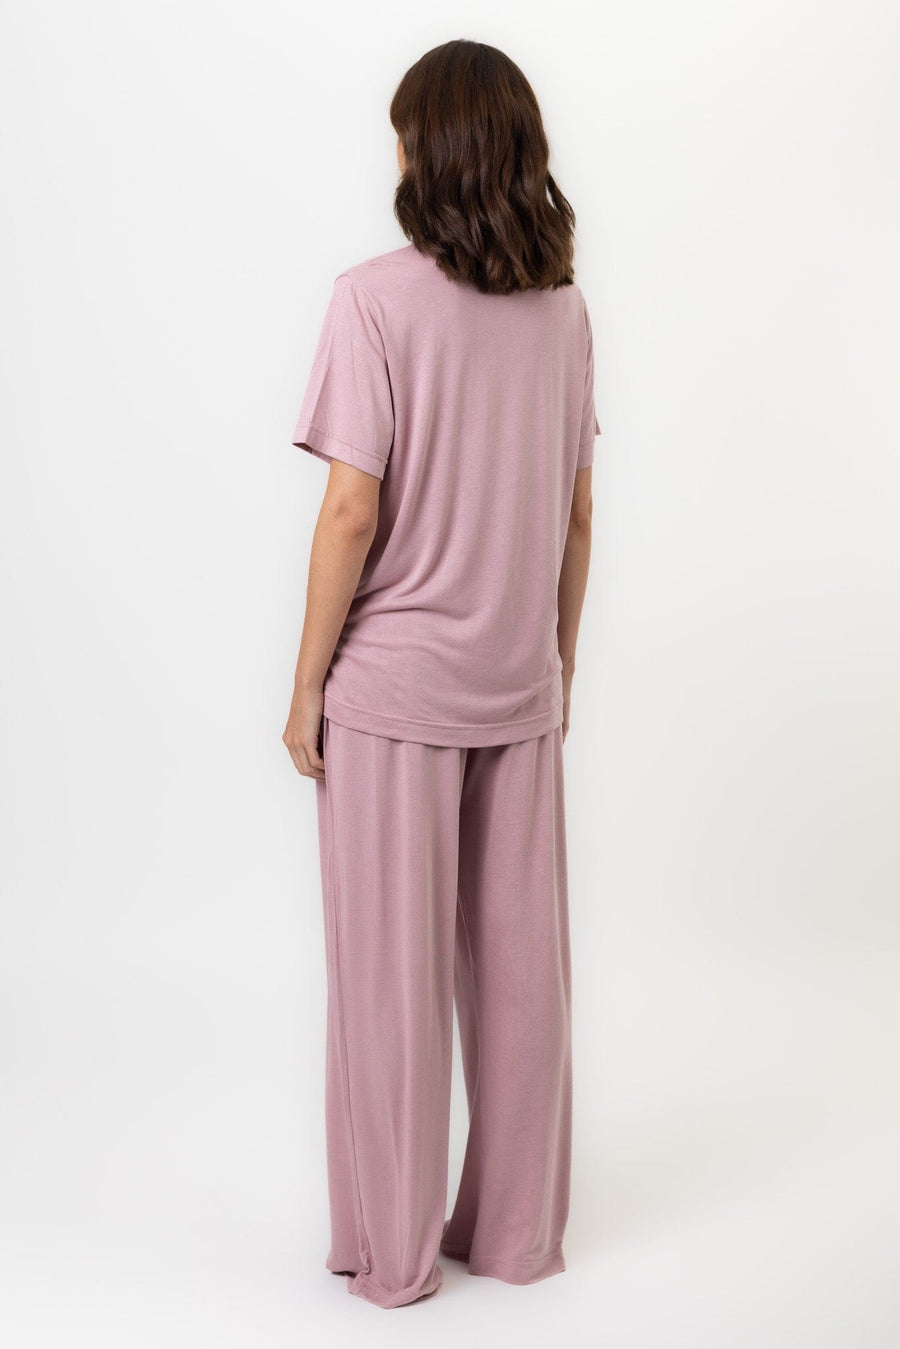 Deanna Pant | Blush Pink Pants Pajamas Australia Online | Reverie the Label  BOTTOMS Deanna Pant